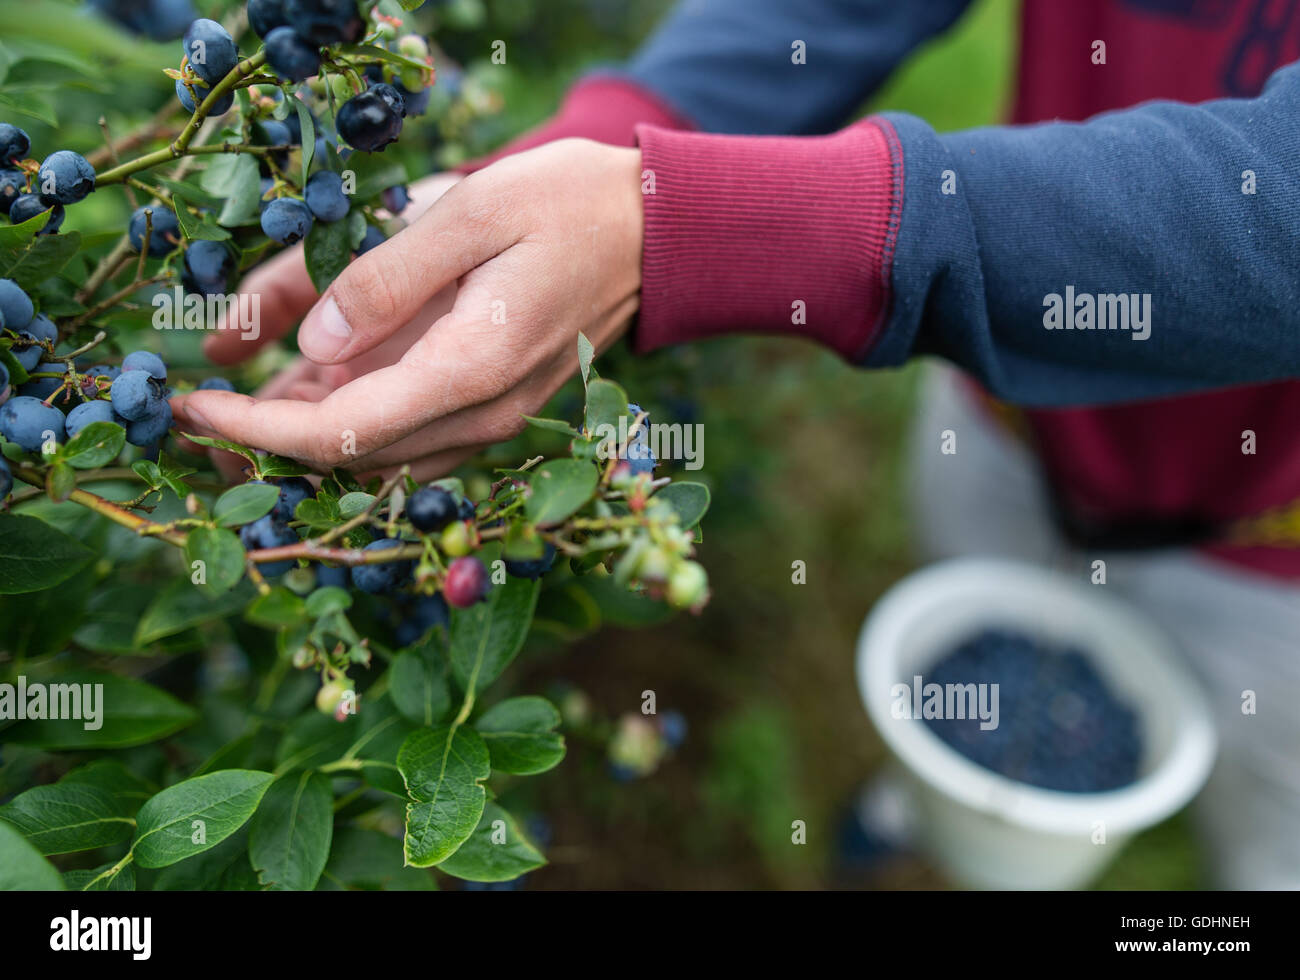 Harvest aiutanti di mirtilli spenna su un mirtillo plantation vicino a Neustadt am Ruebenberge, Germania, 15 luglio 2016. La stagione per i mirtilli in Bassa Sassonia ha iniziato a luglio. Foto: Sebastian Gollnow/dpa Foto Stock